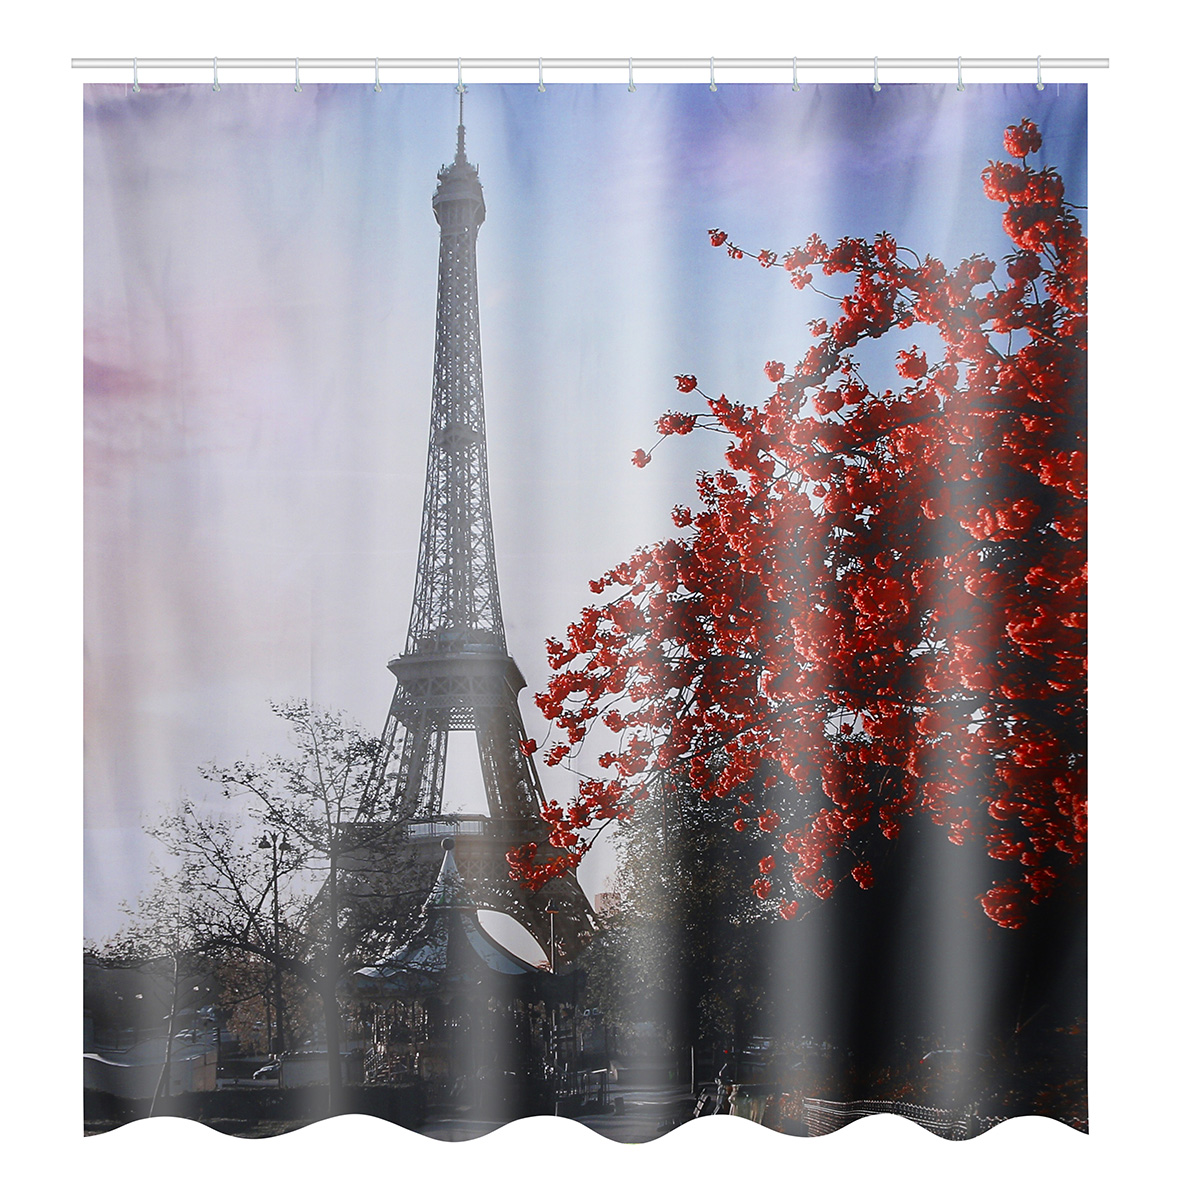 

180X180CM Eiffel Tower Waterproof Polyester Shower Curtain Bathroom Bathe Cloth